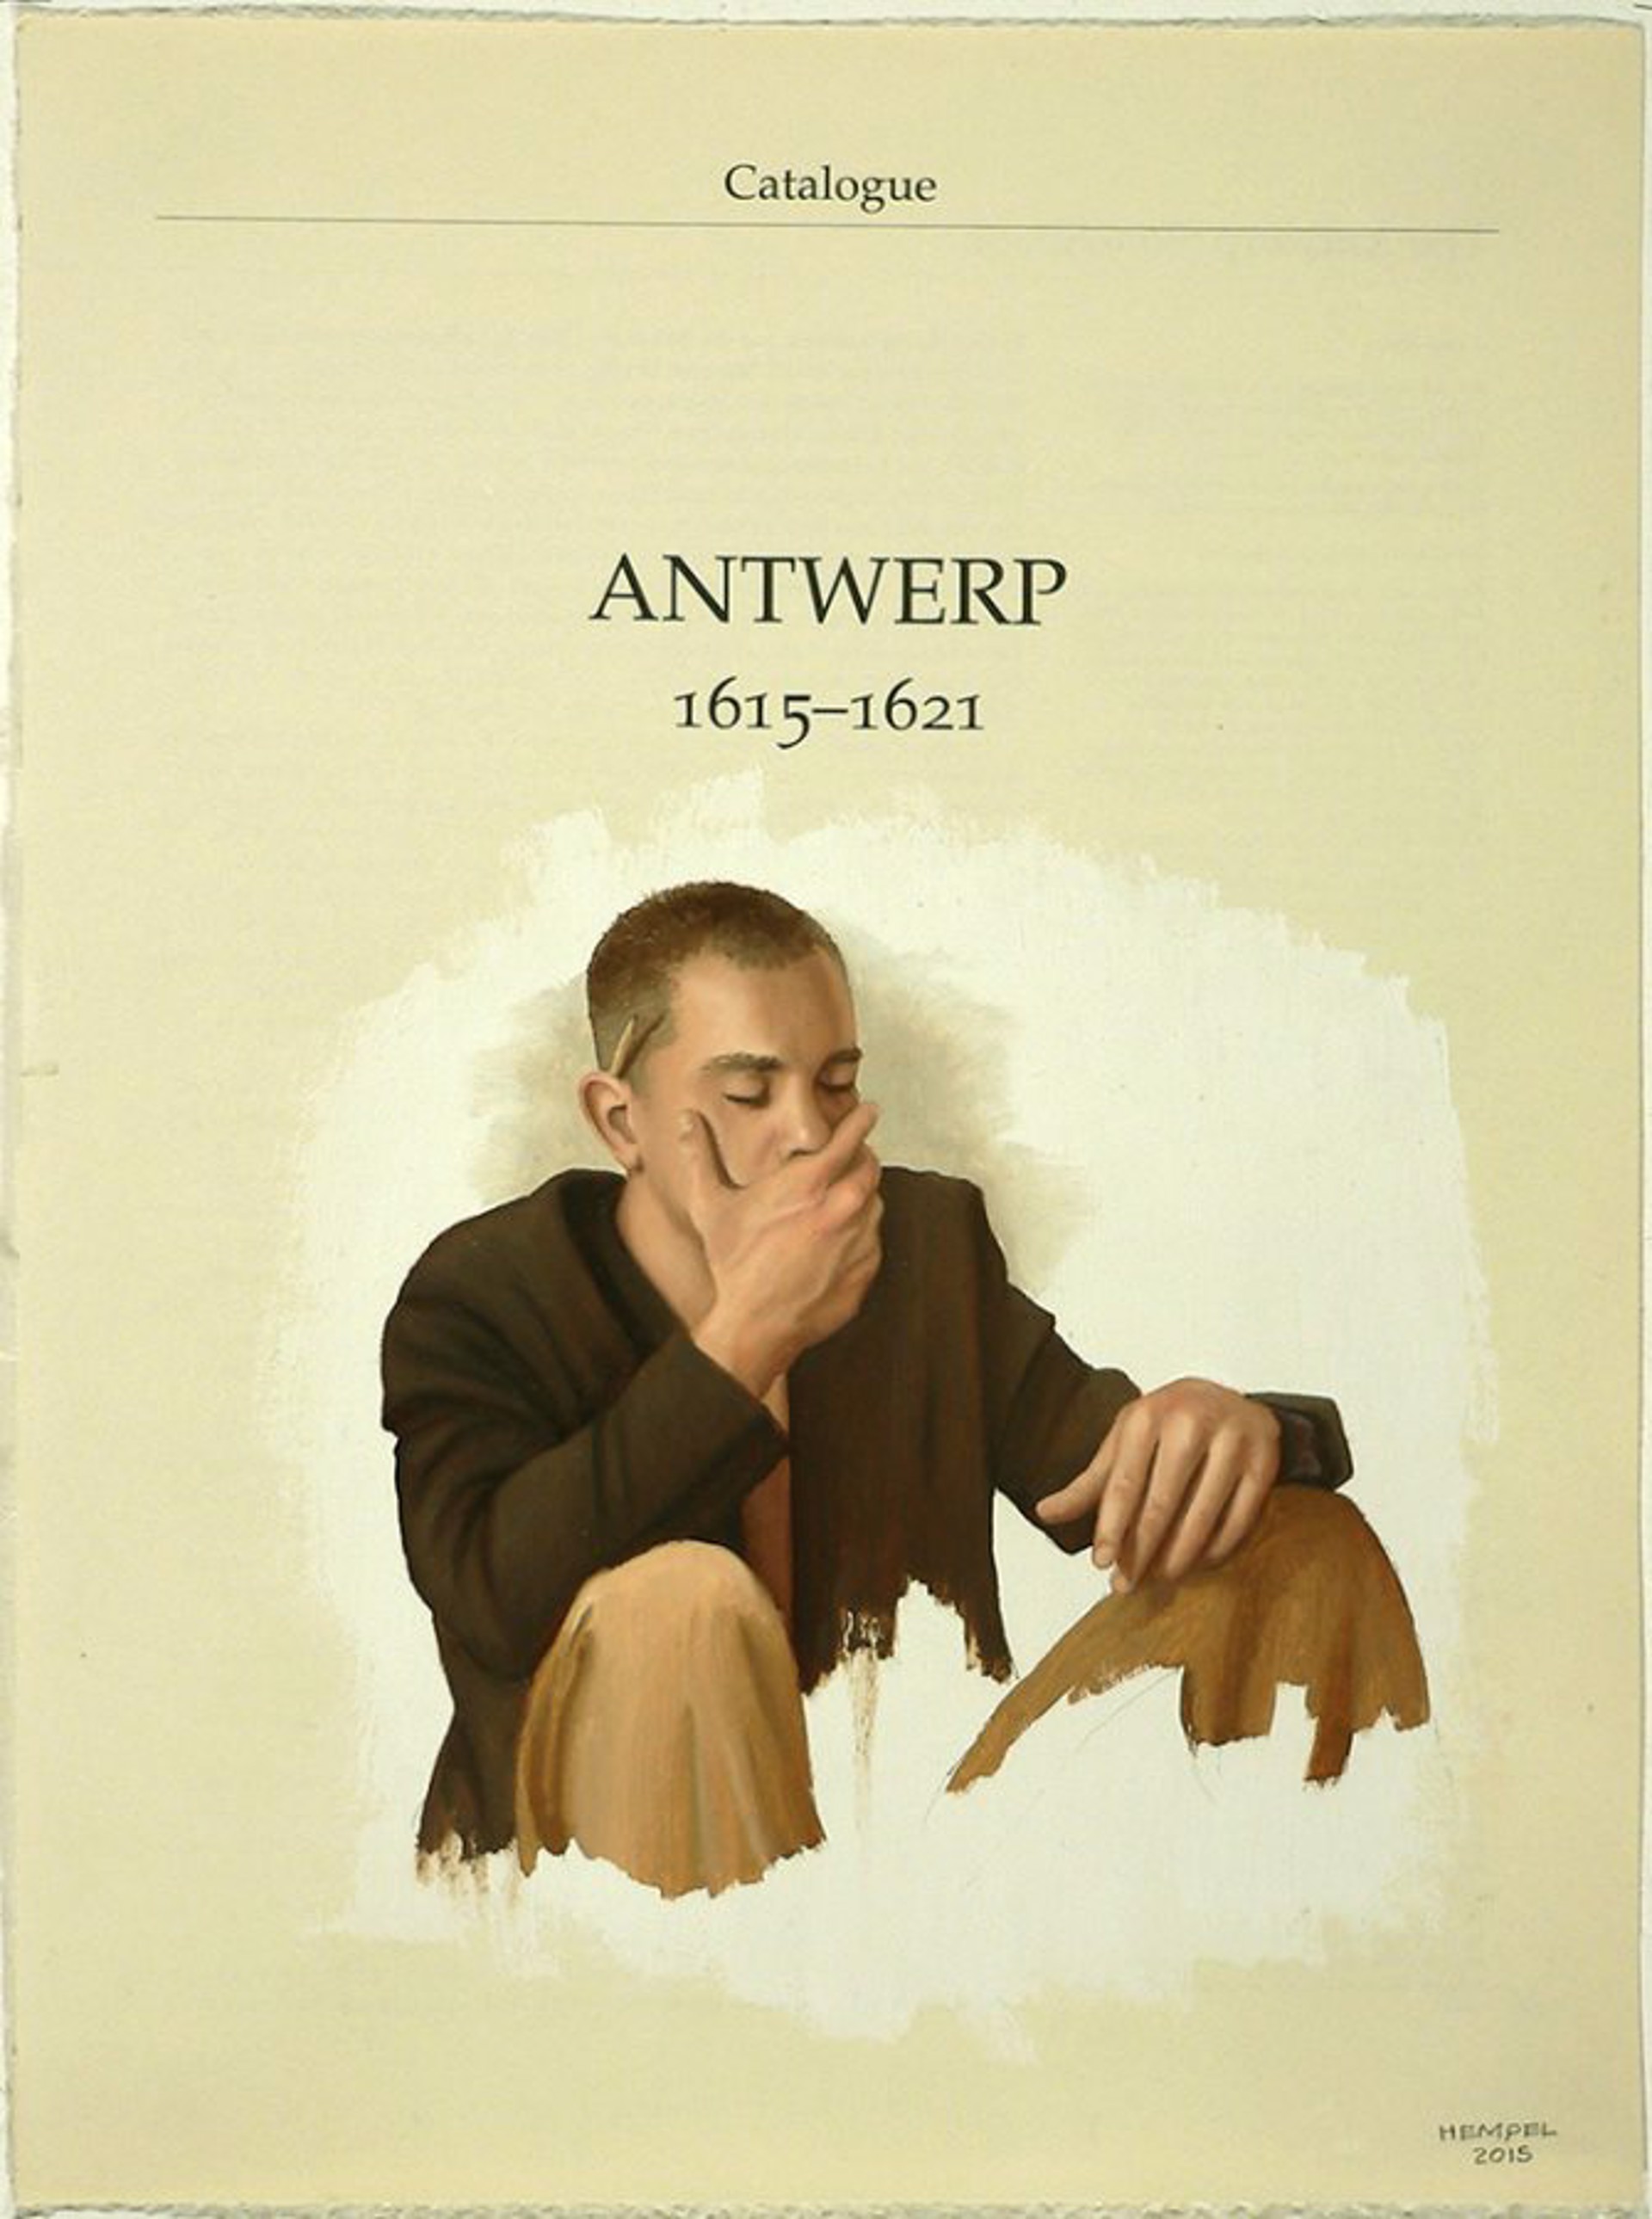 Antwerp, Van Dyck Series by Wes Hempel